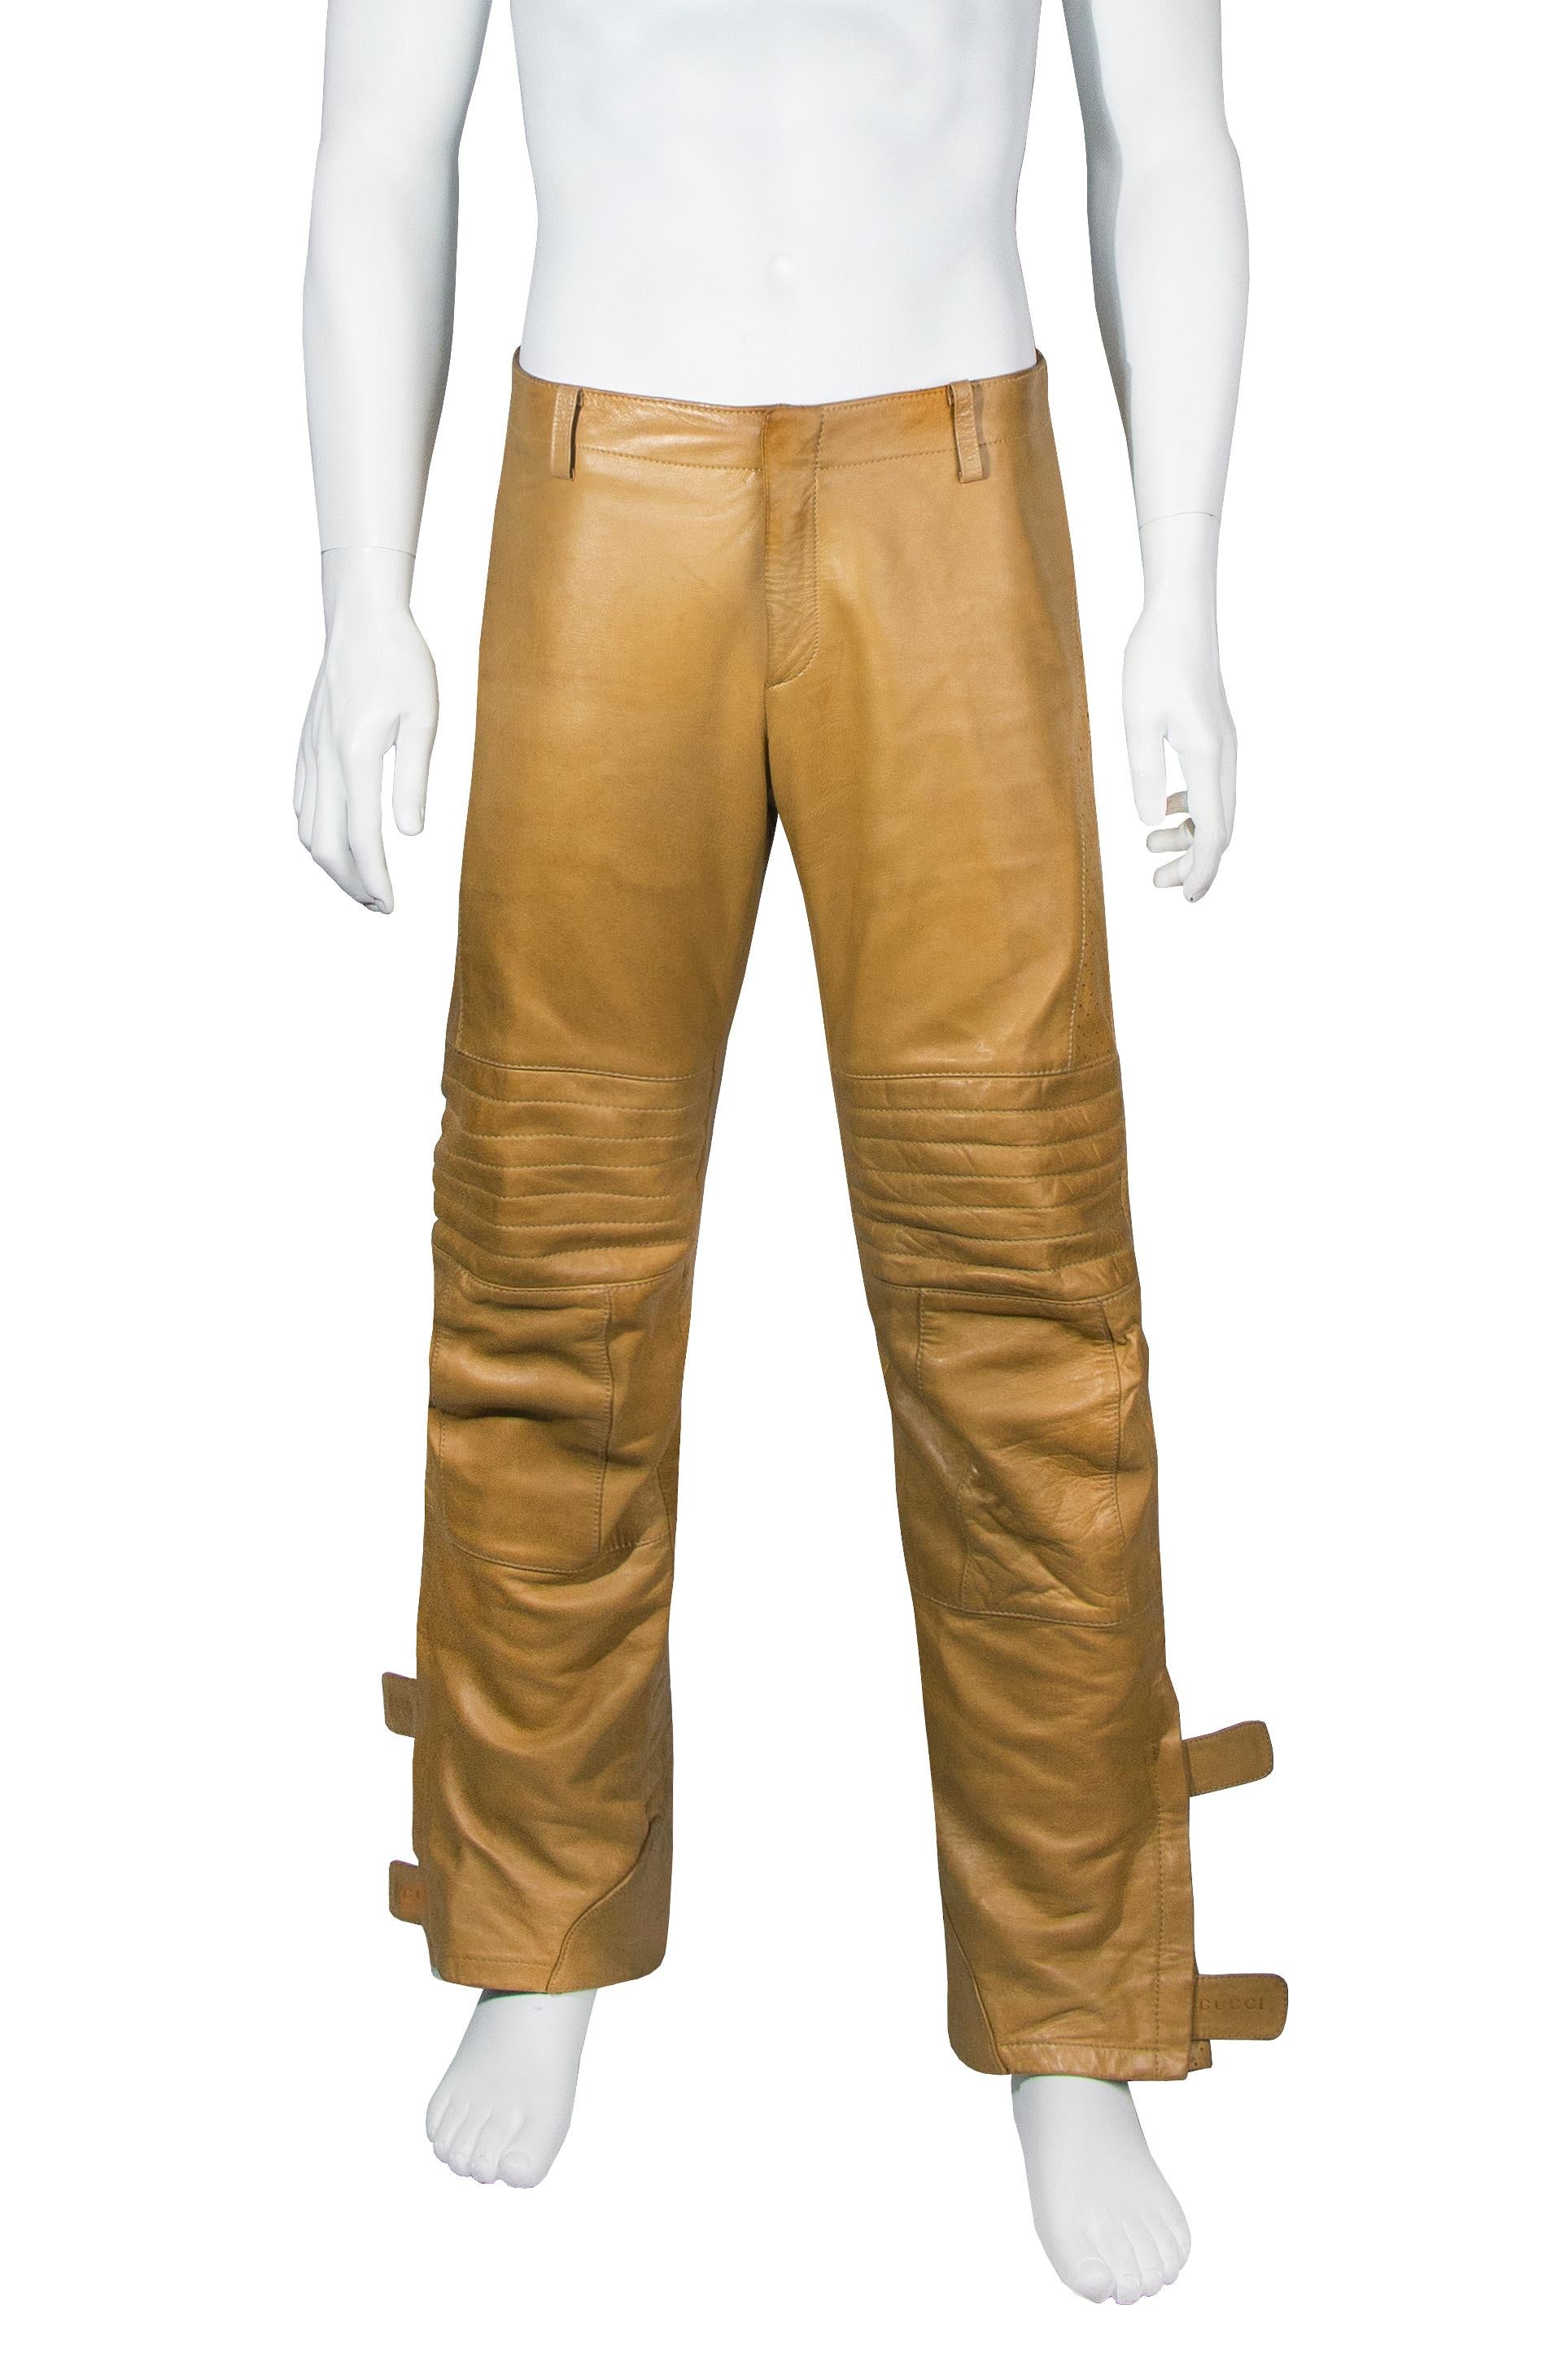 Gucci by Tom Ford Motorradhose aus hellbraunem Leder für Herren, Herbst-Winter 2000. Diese Hose, die in dieser Saison sowohl bei der Herren- als auch bei der Damen-Laufstegshow gezeigt wurde, ist ein wahrhaft ikonisches Design und ein starkes